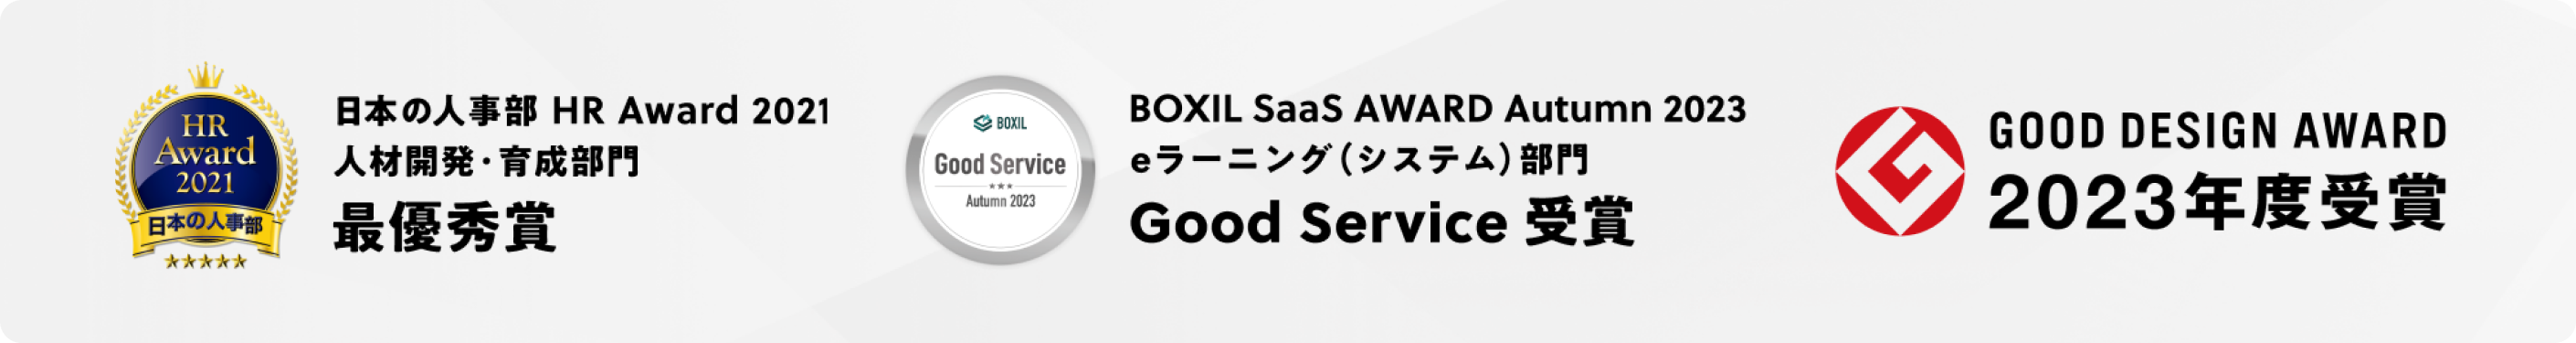 日本の人事部 HR Award 2021 人材開発・育成部門 最優秀賞、BOXIL SaaS AWARD Autumn 2023 eラーニング（システム）部門 Good Service 受賞、GOOD DESIGN AWARD 2023年度受賞